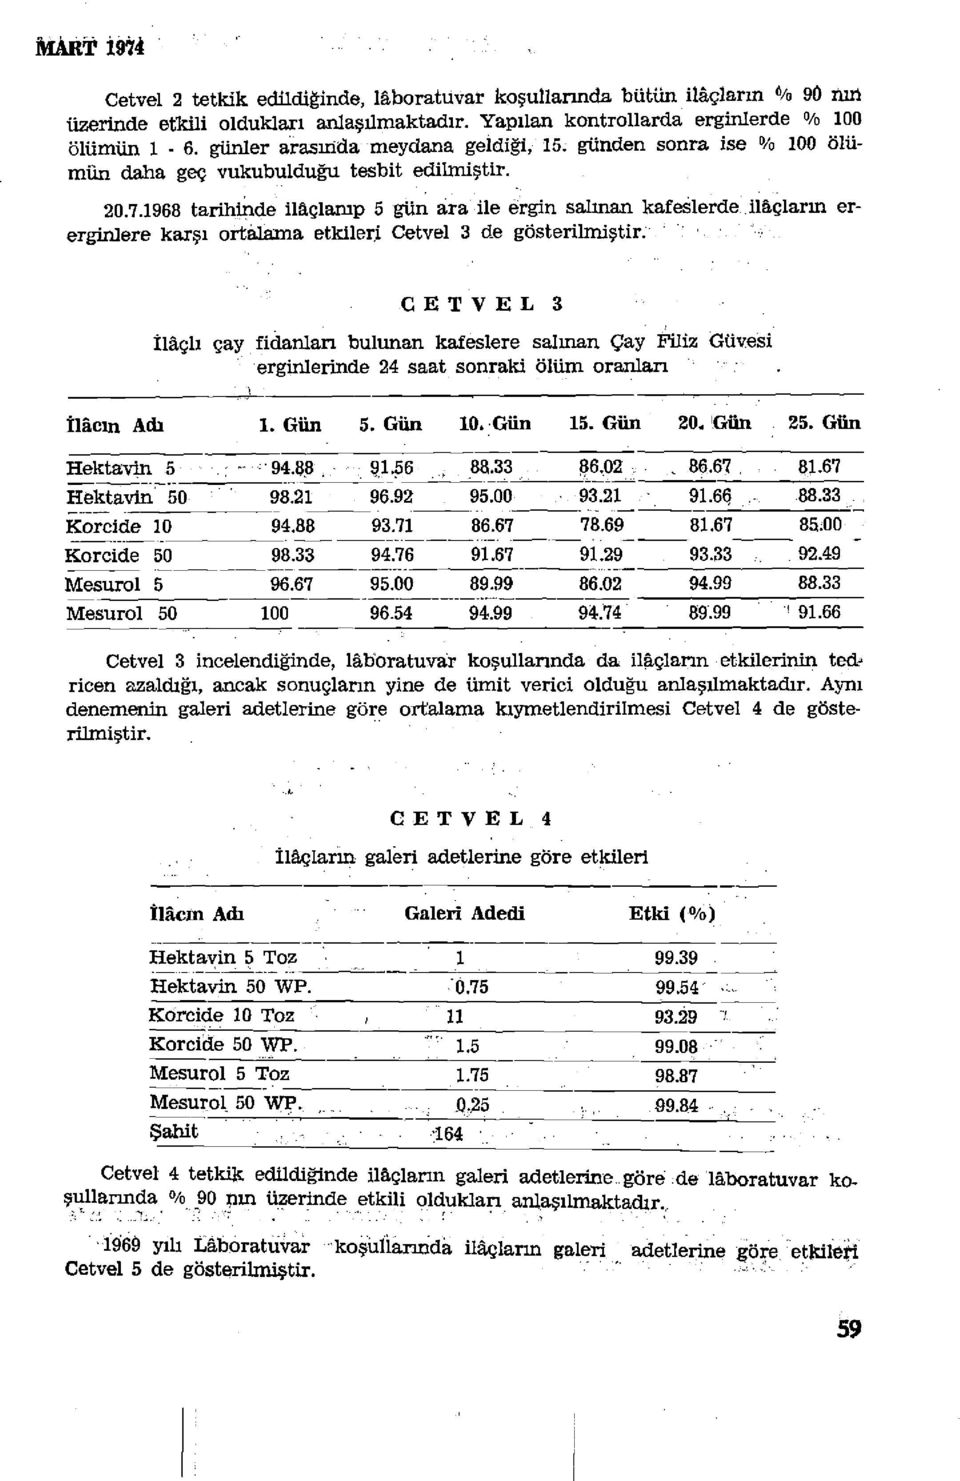 1968 tarihinde ilaçlanıp 5 gün ara ile ergin salınan kafeslerde ilâçların ererginlere karşı ortalama etkileri Cetvel 3 de gösterilmiştir.